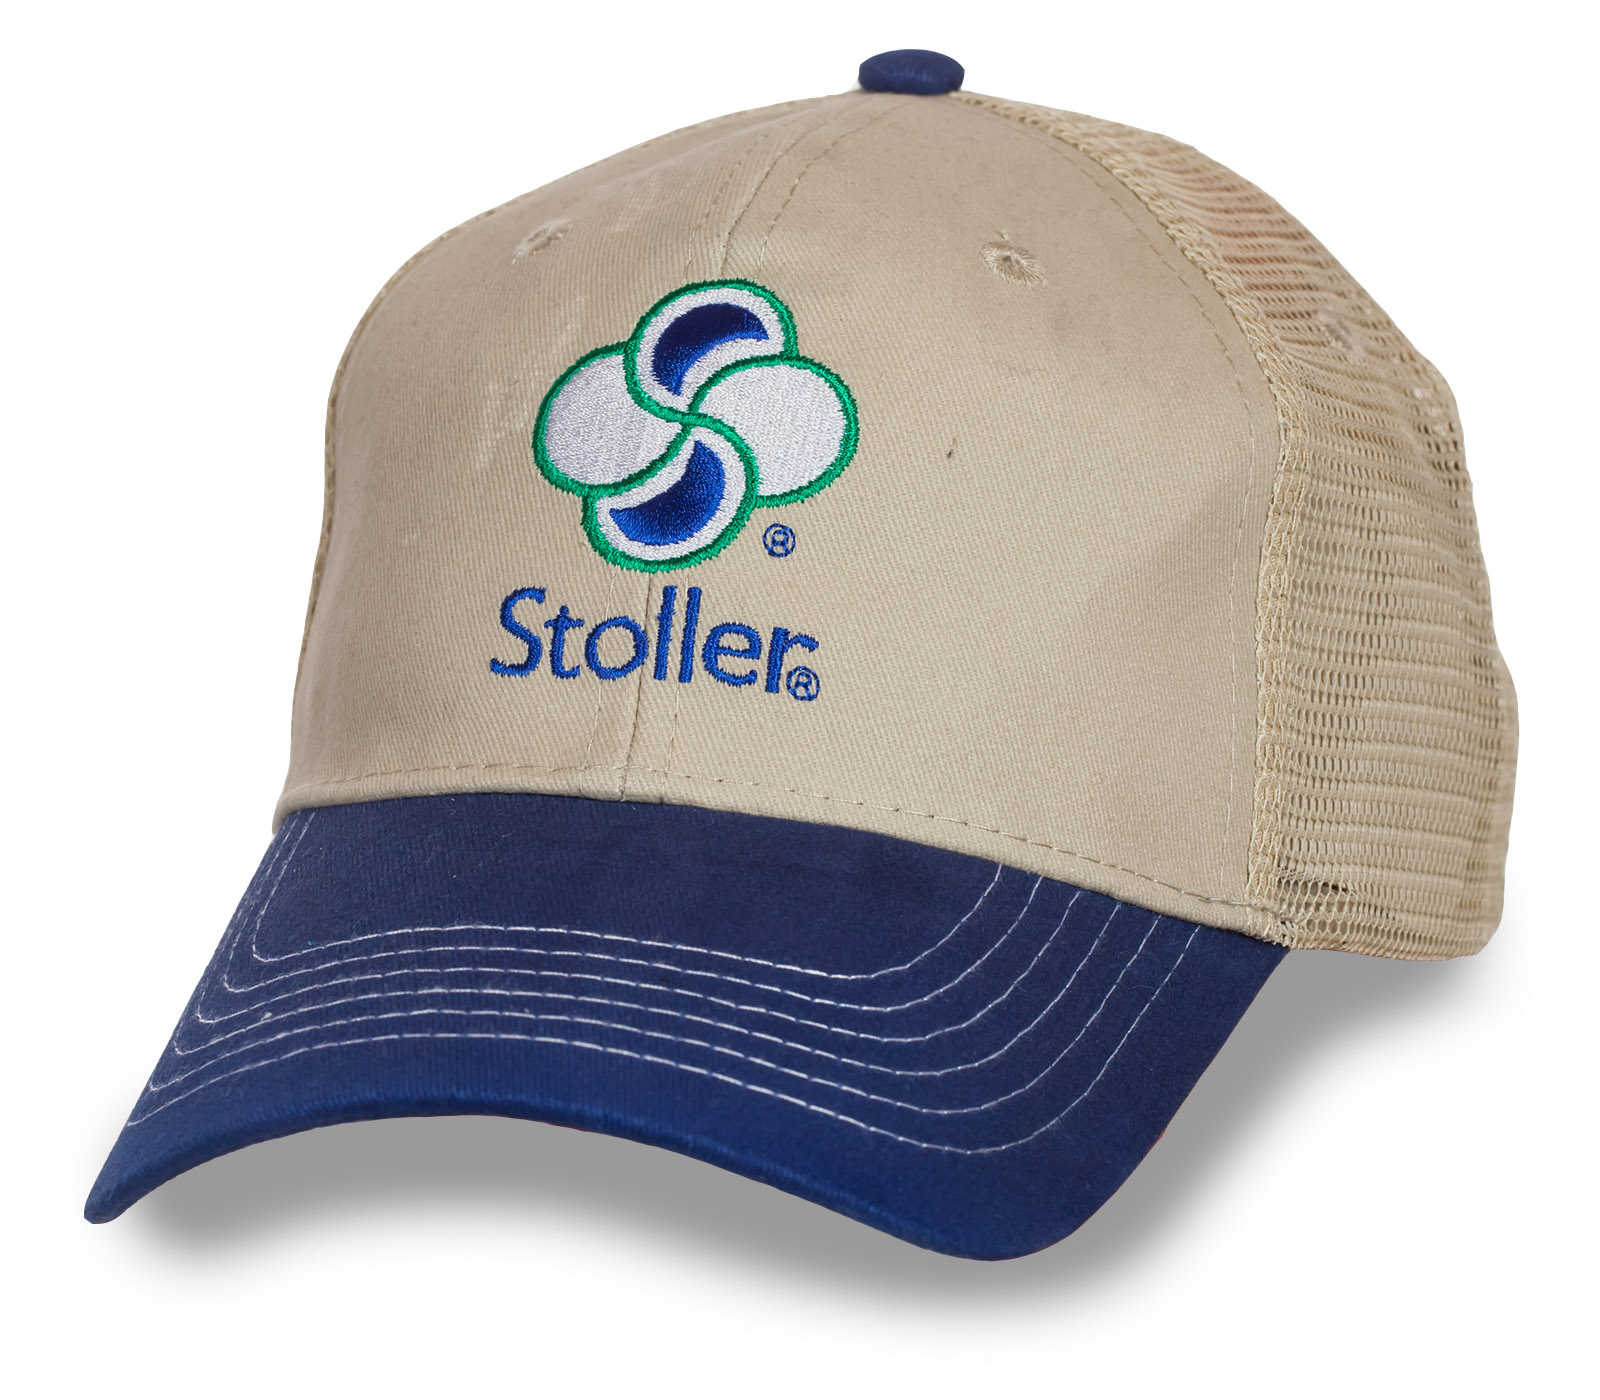 Модные бейсболки Stoller по низким ценам онлайн